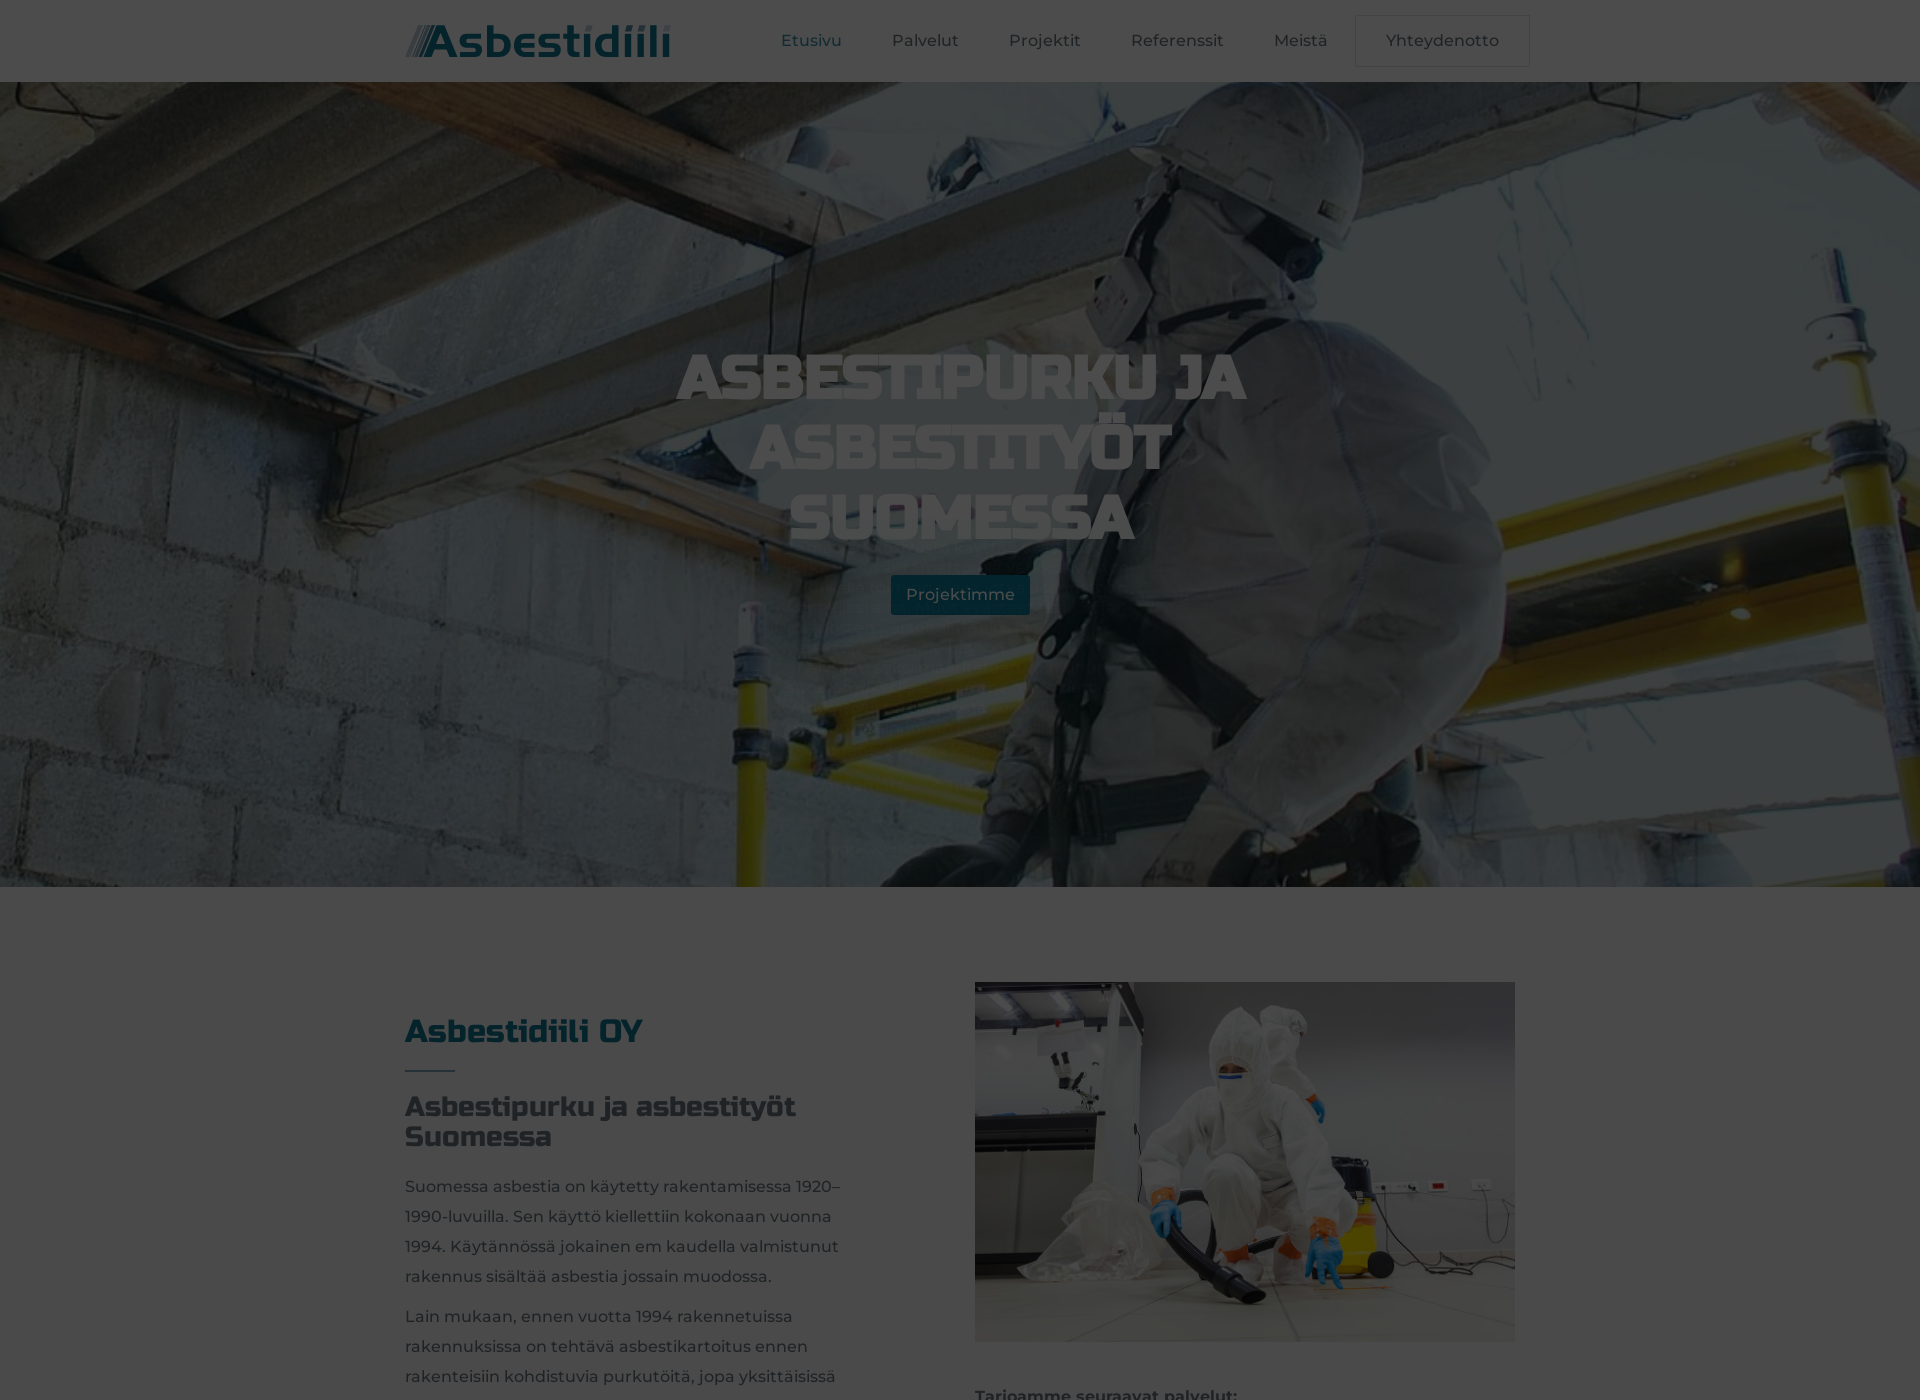 Näyttökuva asbestidiili.fi